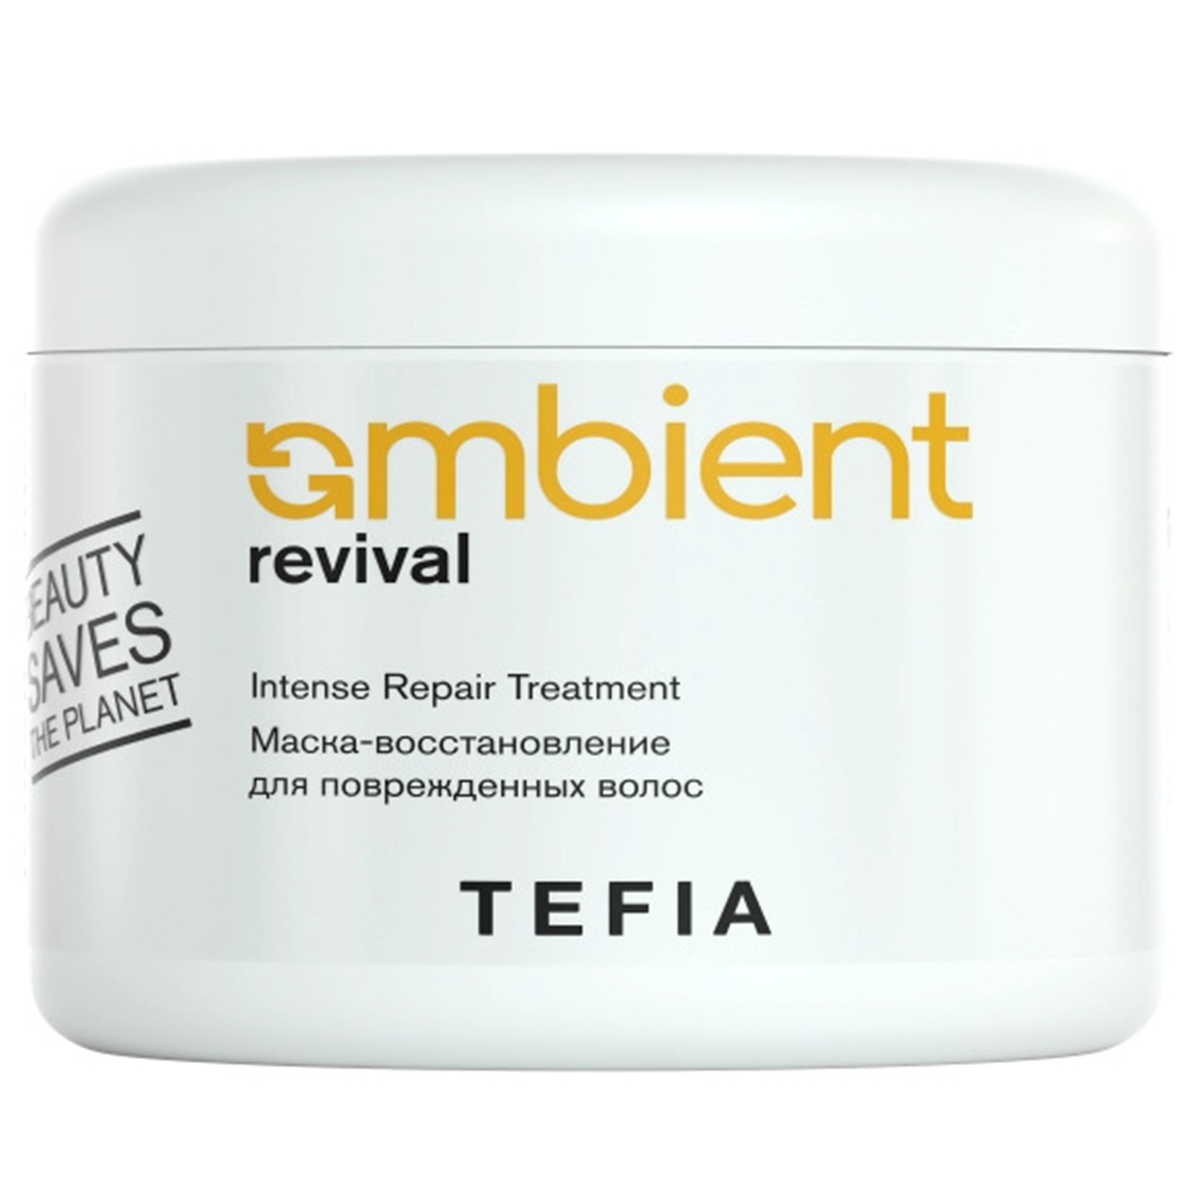 Tefia Маска-восстановление для поврежденных волос, 500 мл (Tefia, Ambient) tefia ambient revival маска восстановление для поврежденных волос 500 мл